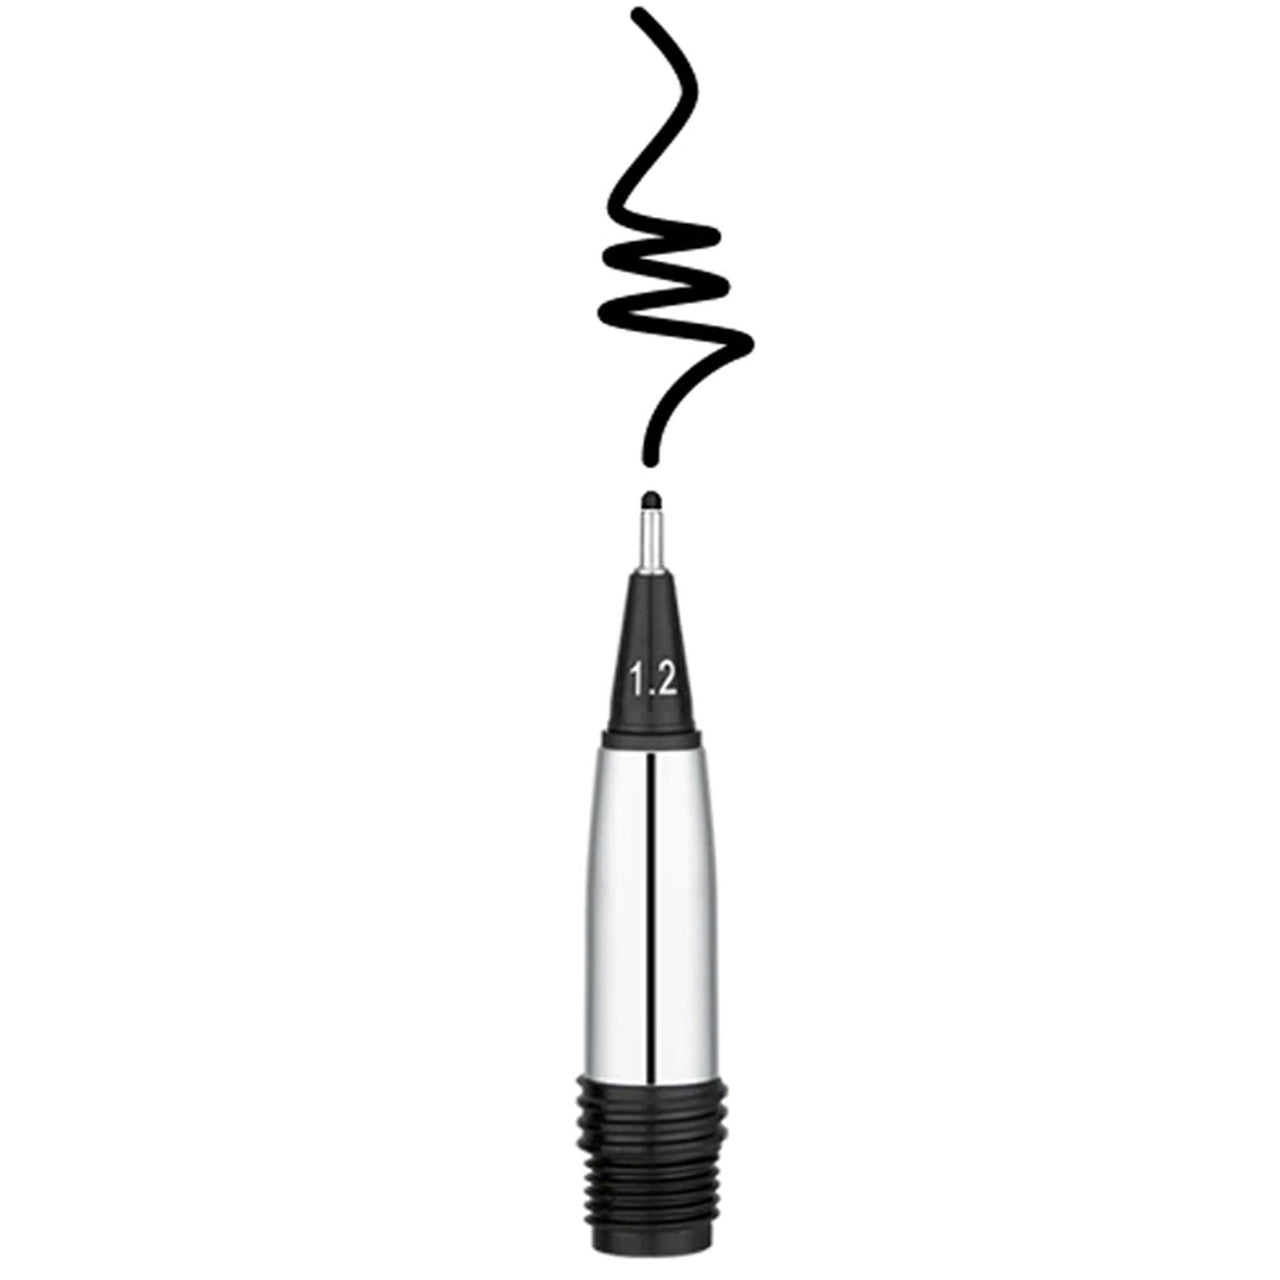 Yookers Front Section for Metis Fiber Pen Black Grid or Grey Brushed